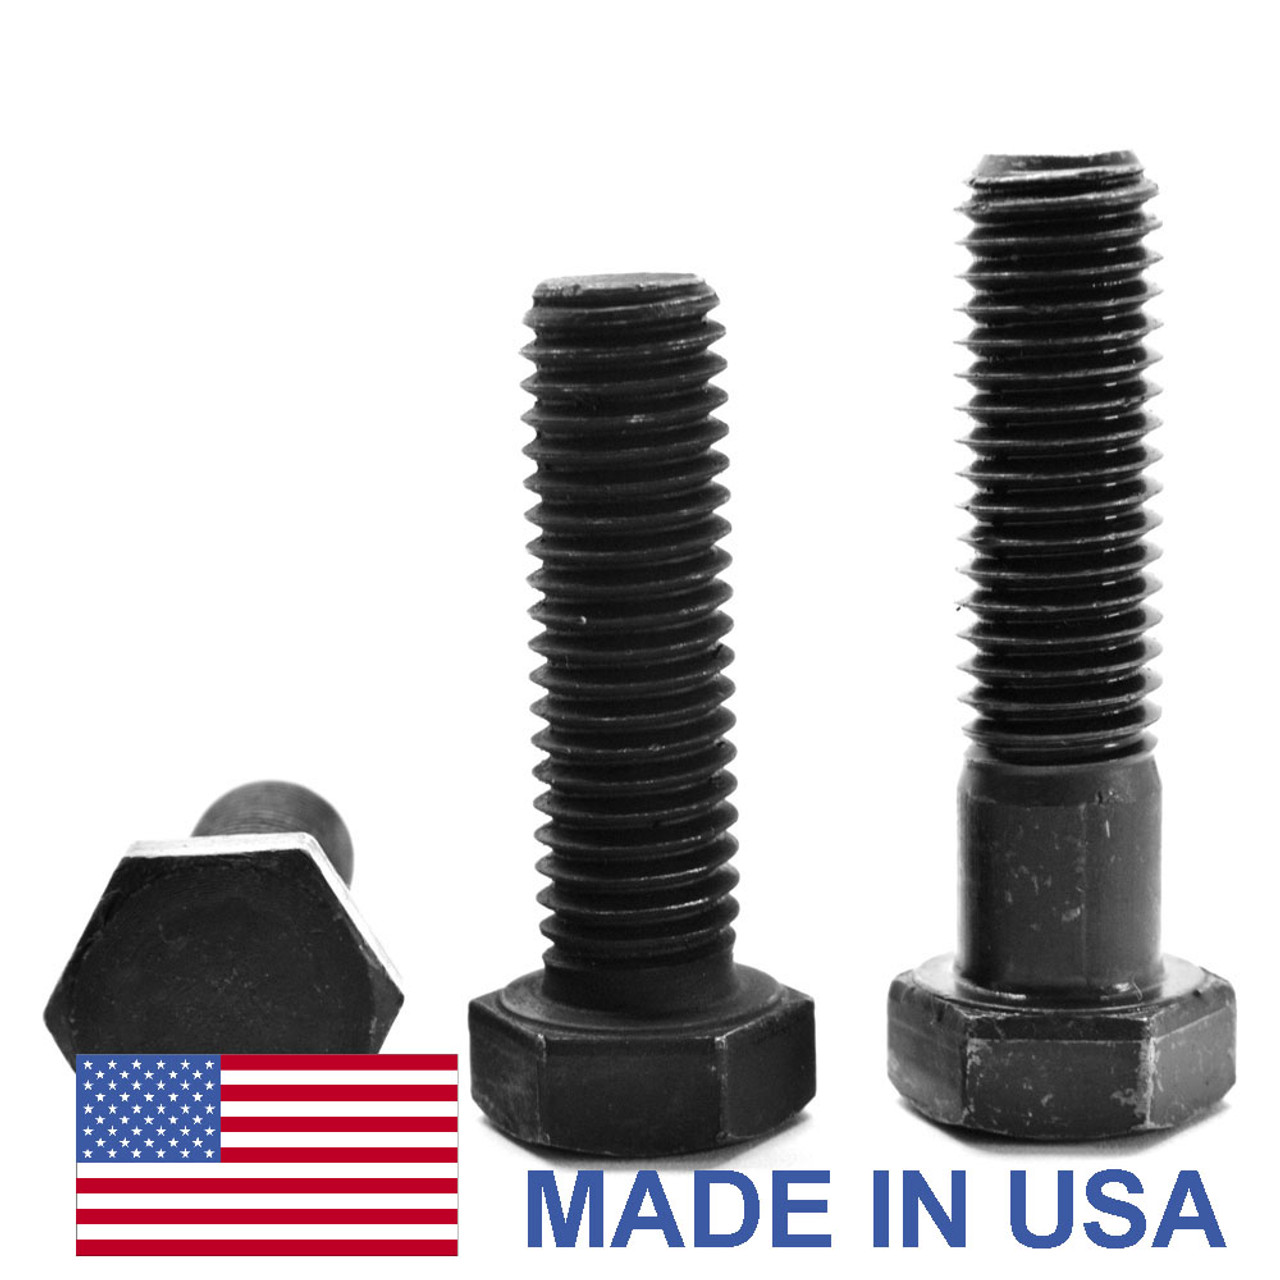 1"-14 x 10" (PT) UNS Thread Grade 8 Hex Cap Screw (Bolt) - USA Alloy Steel Black Oxide